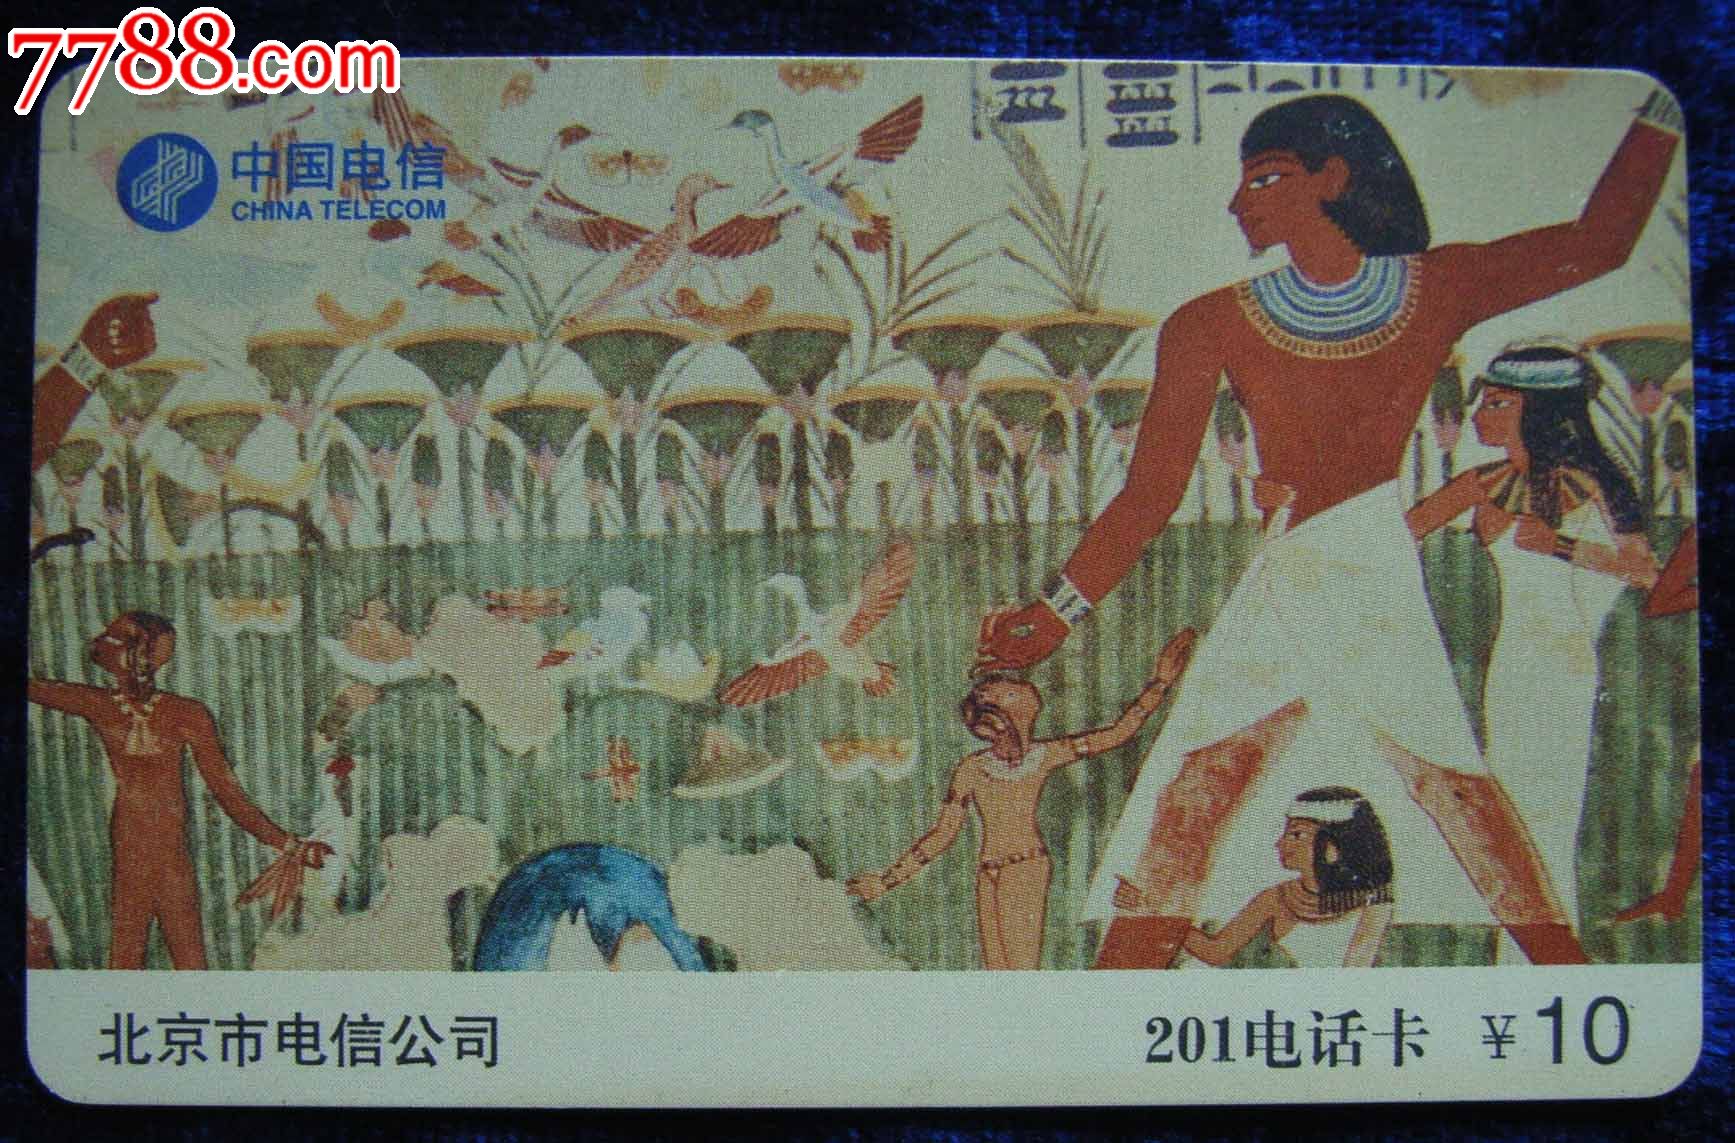 古埃及壁画,IP卡\/密码卡,201卡,21世纪初,电信,北京,普通卡,长方形卡,单张散卡,se17894156,零售,中国收藏热线